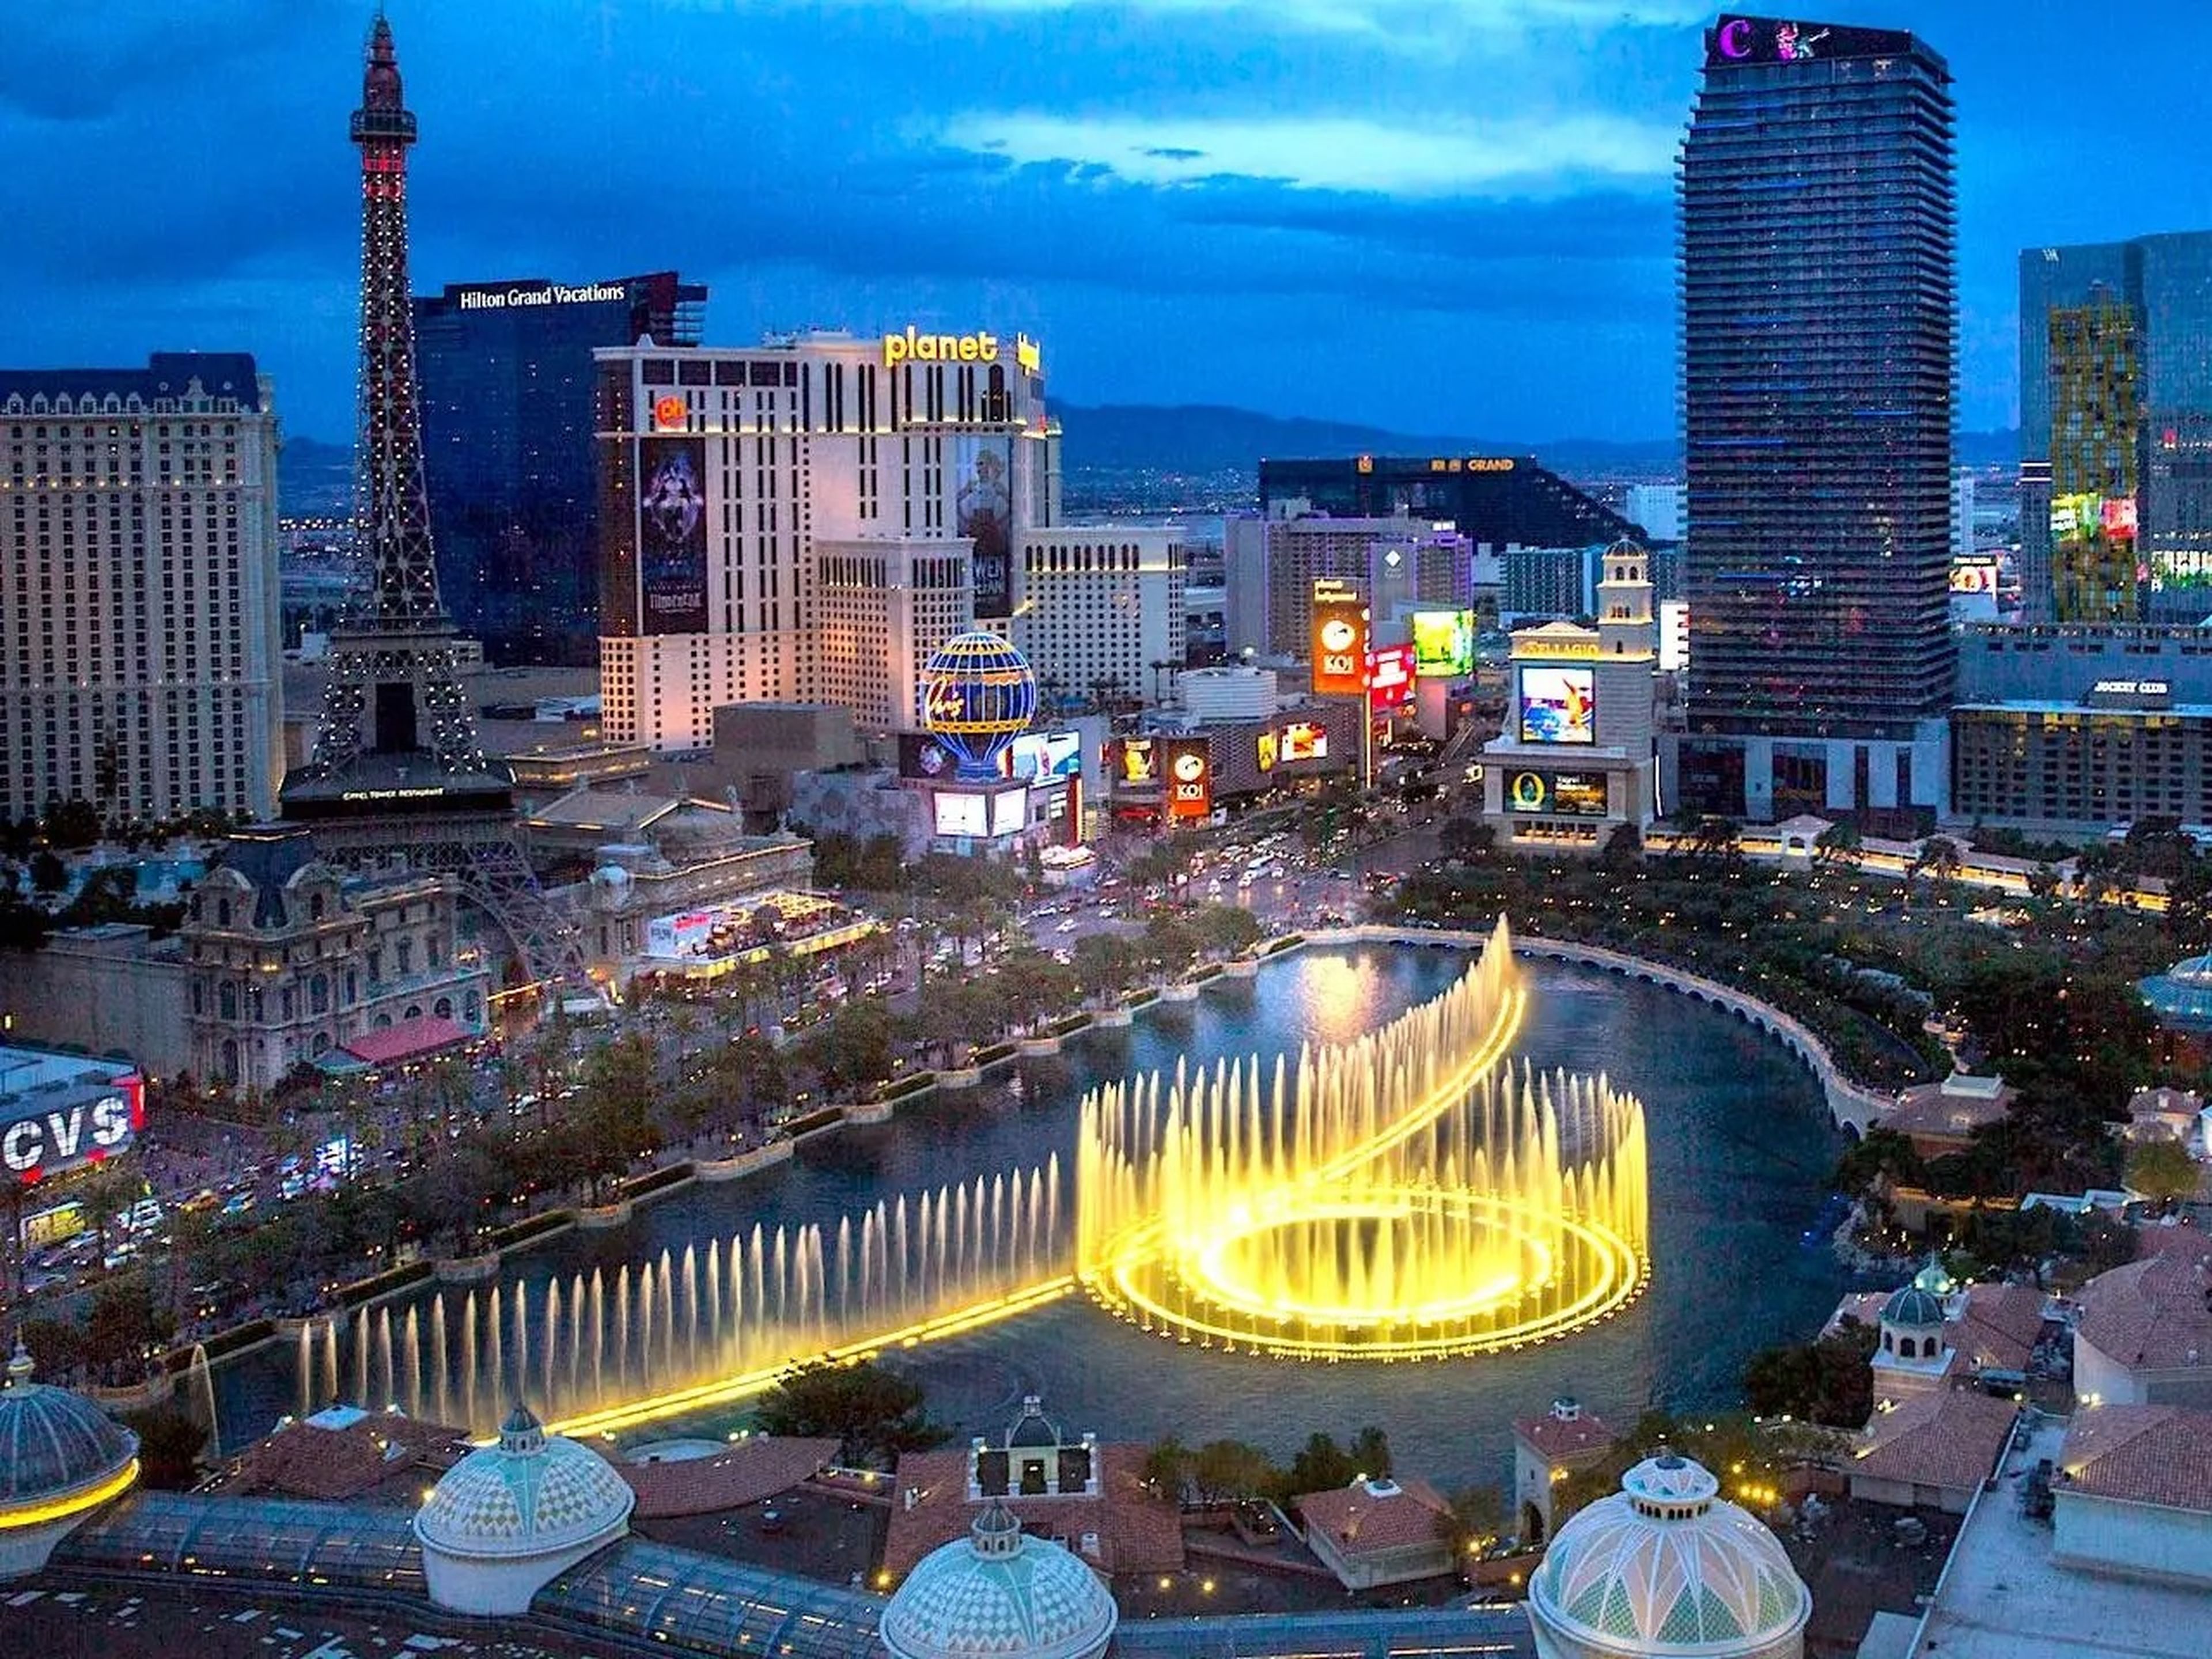 El espectáculo nocturno de la fuente de agua del Hotel Bellagio se puede ver entre las luces de otros casinos del Strip de Las Vegas.